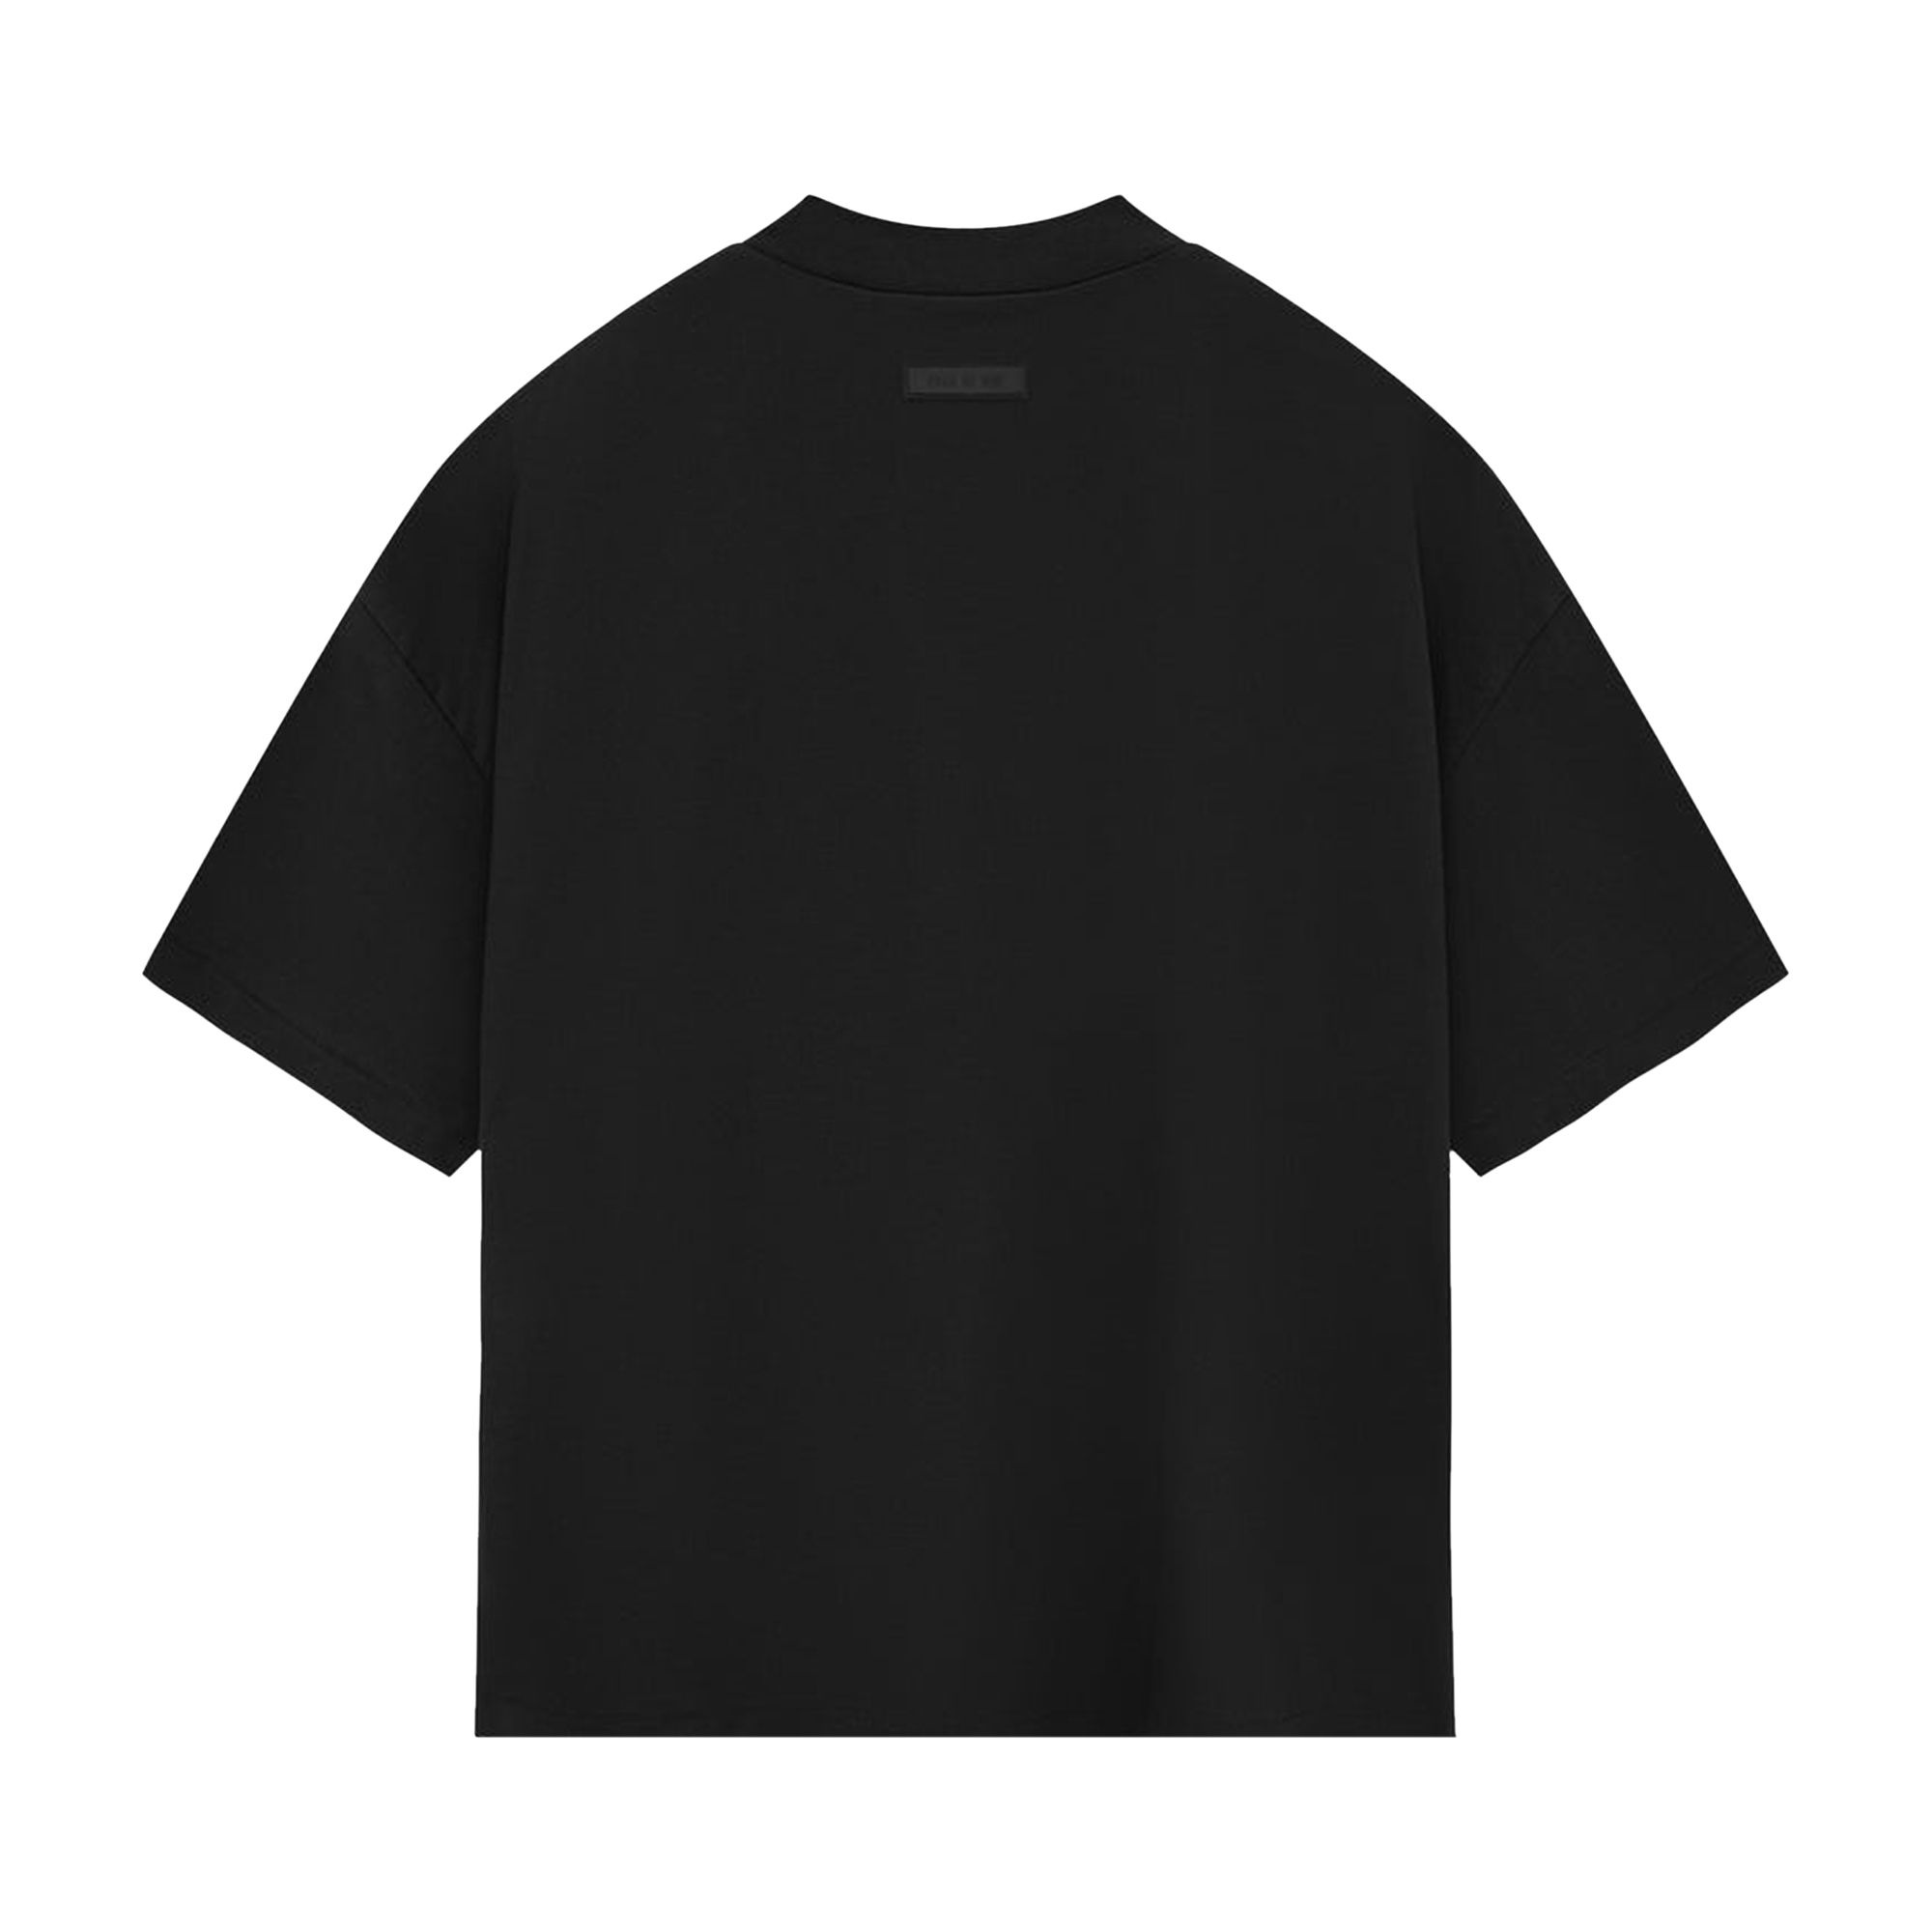 Fear of God Essentials Crewneck T-Shirt II 'Jet Black' - 2